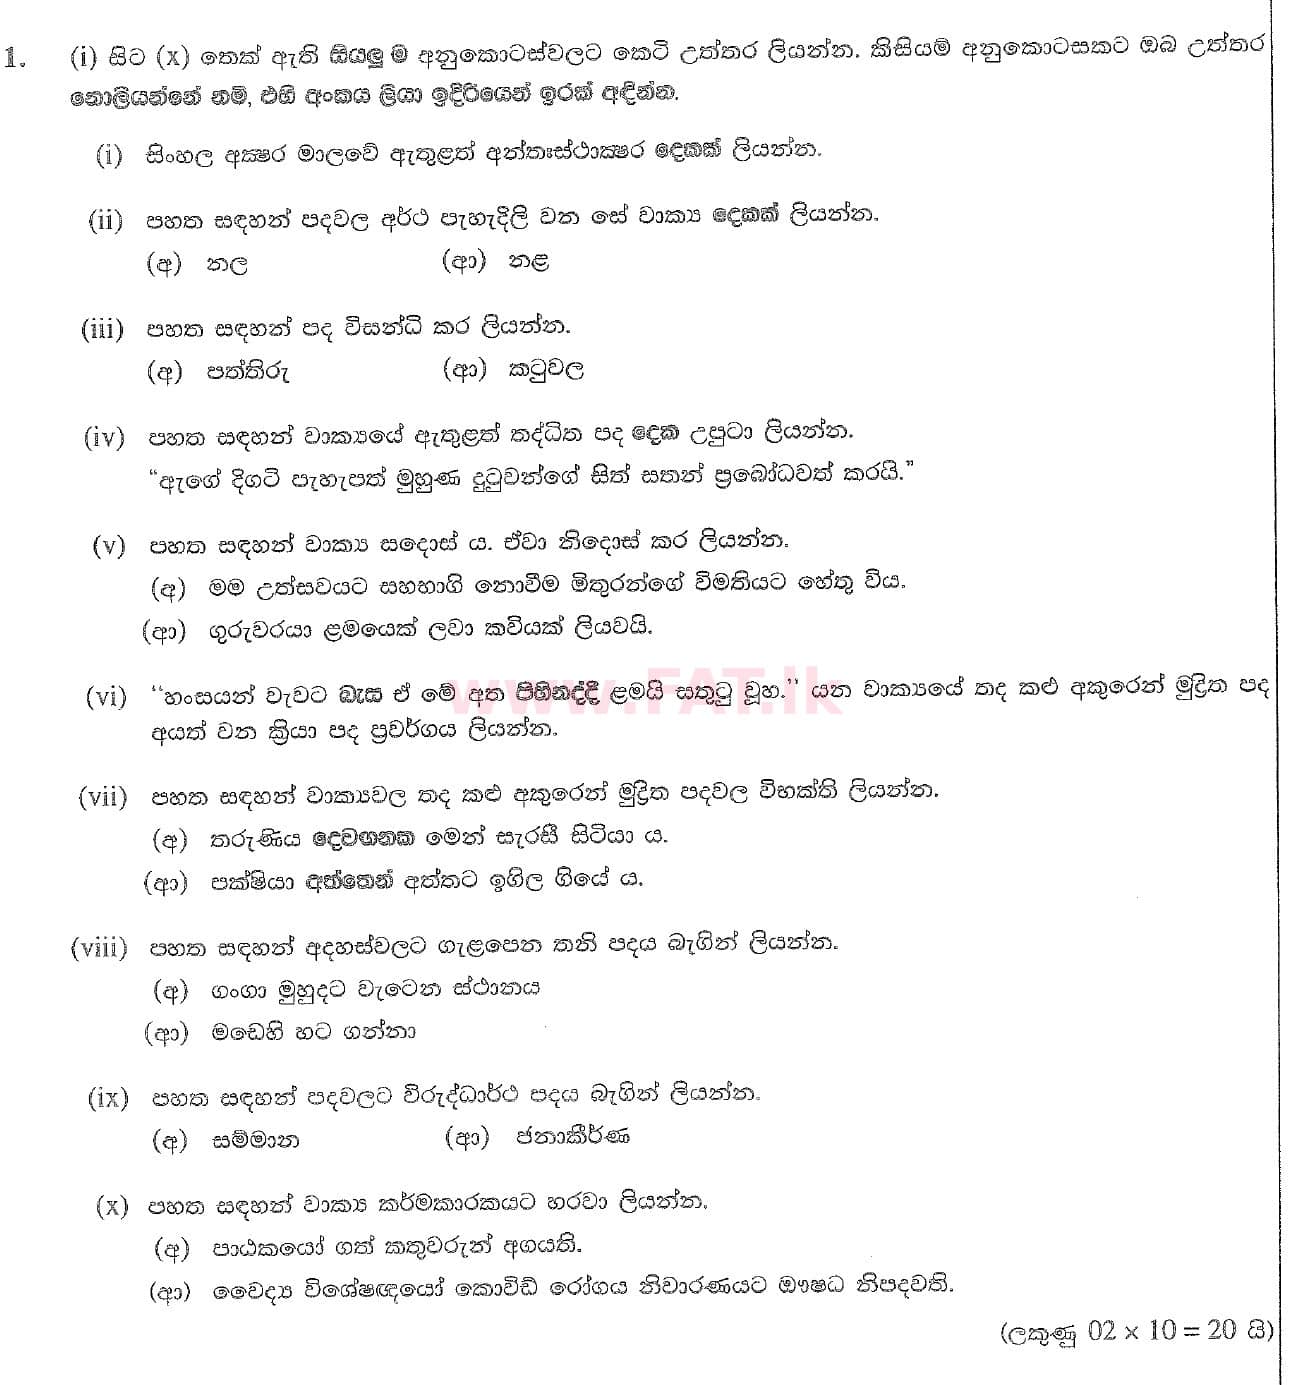 உள்ளூர் பாடத்திட்டம் : சாதாரண நிலை (சா/த) சிங்கள இலக்கியம் - 2020 மார்ச் - தாள்கள் II (සිංහල மொழிமூலம்) 1 1